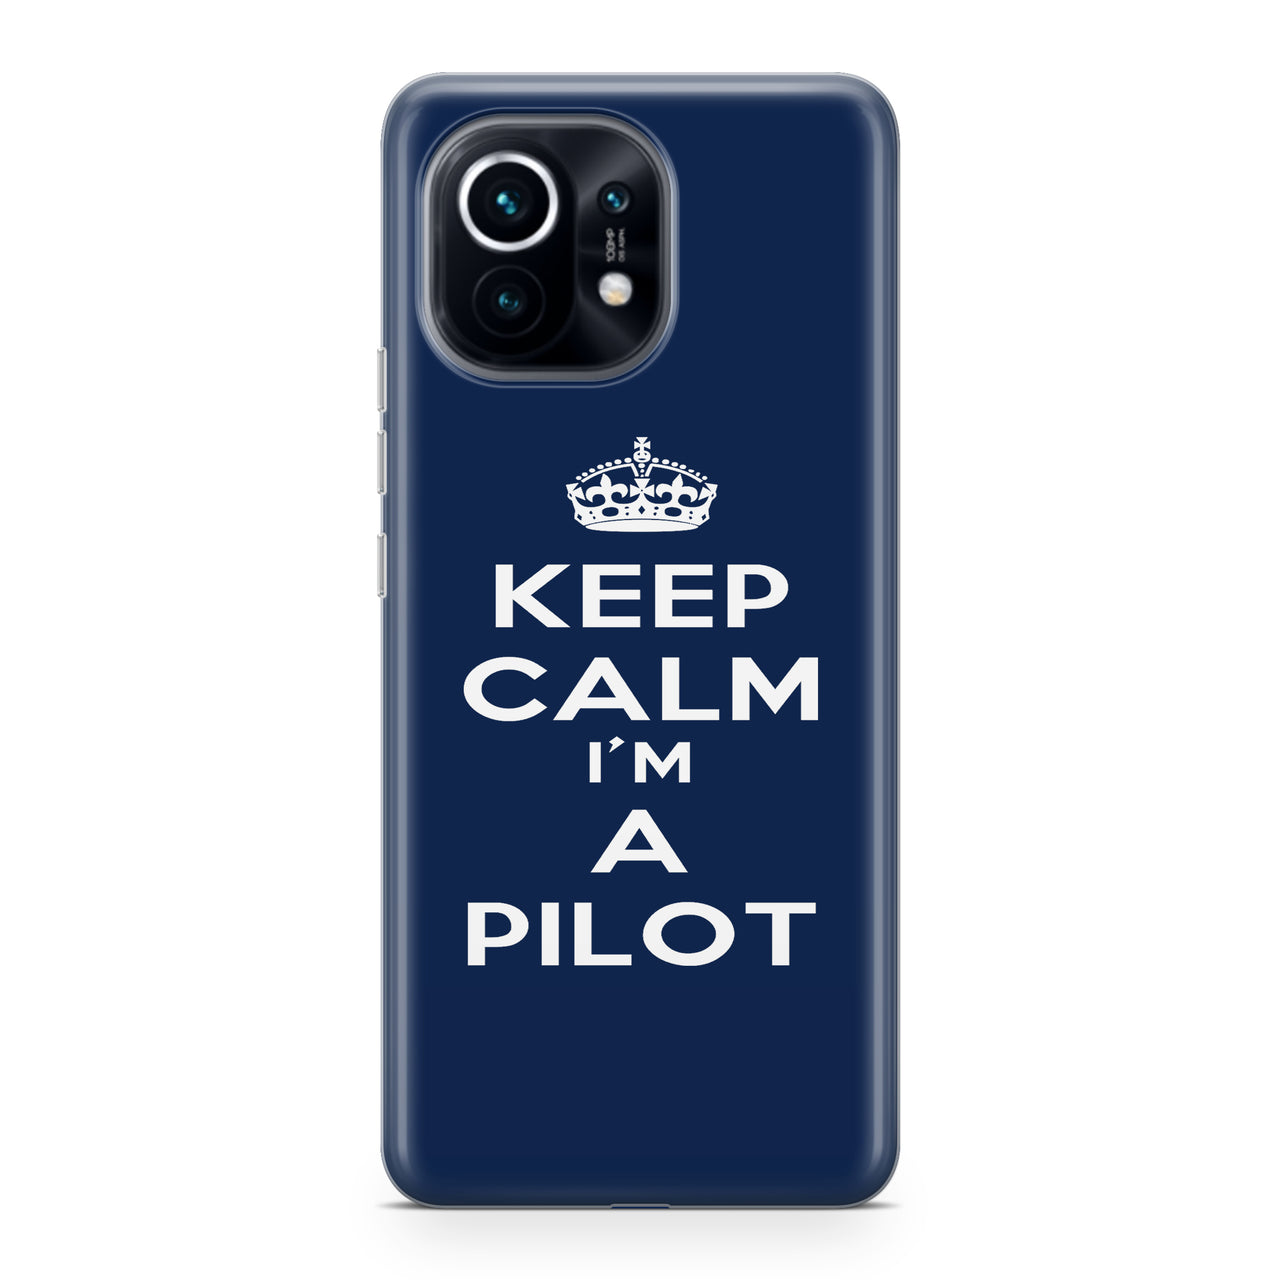 Keep Calm I'm a Pilot Designed Xiaomi Cases